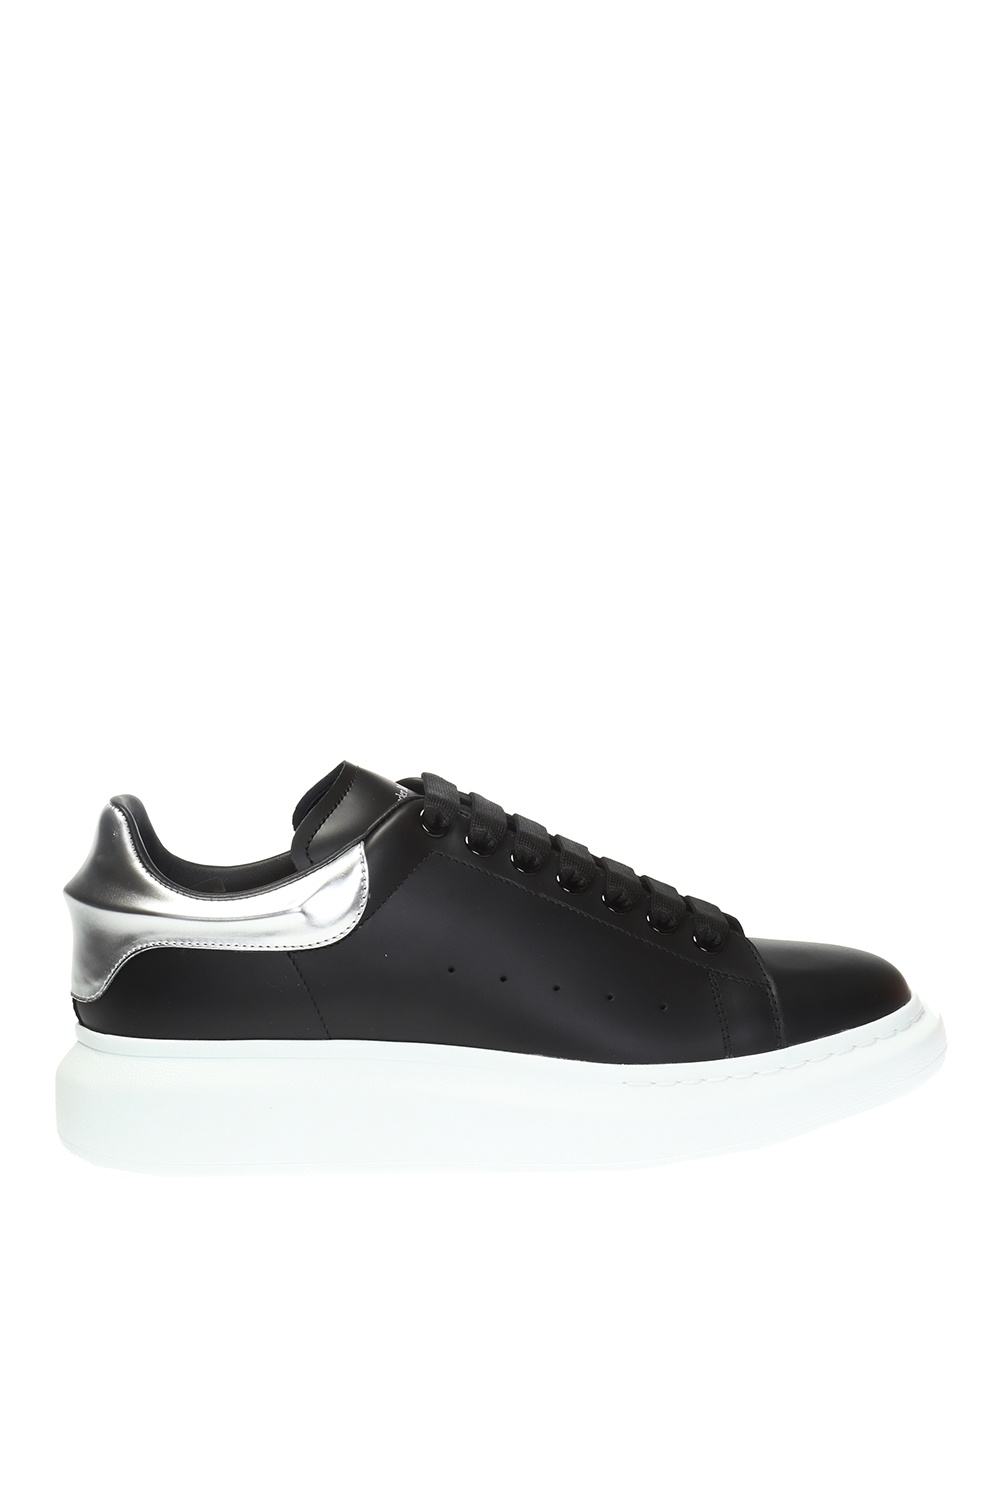 Grey Sneakers with logo Alexander McQueen - Vitkac GB